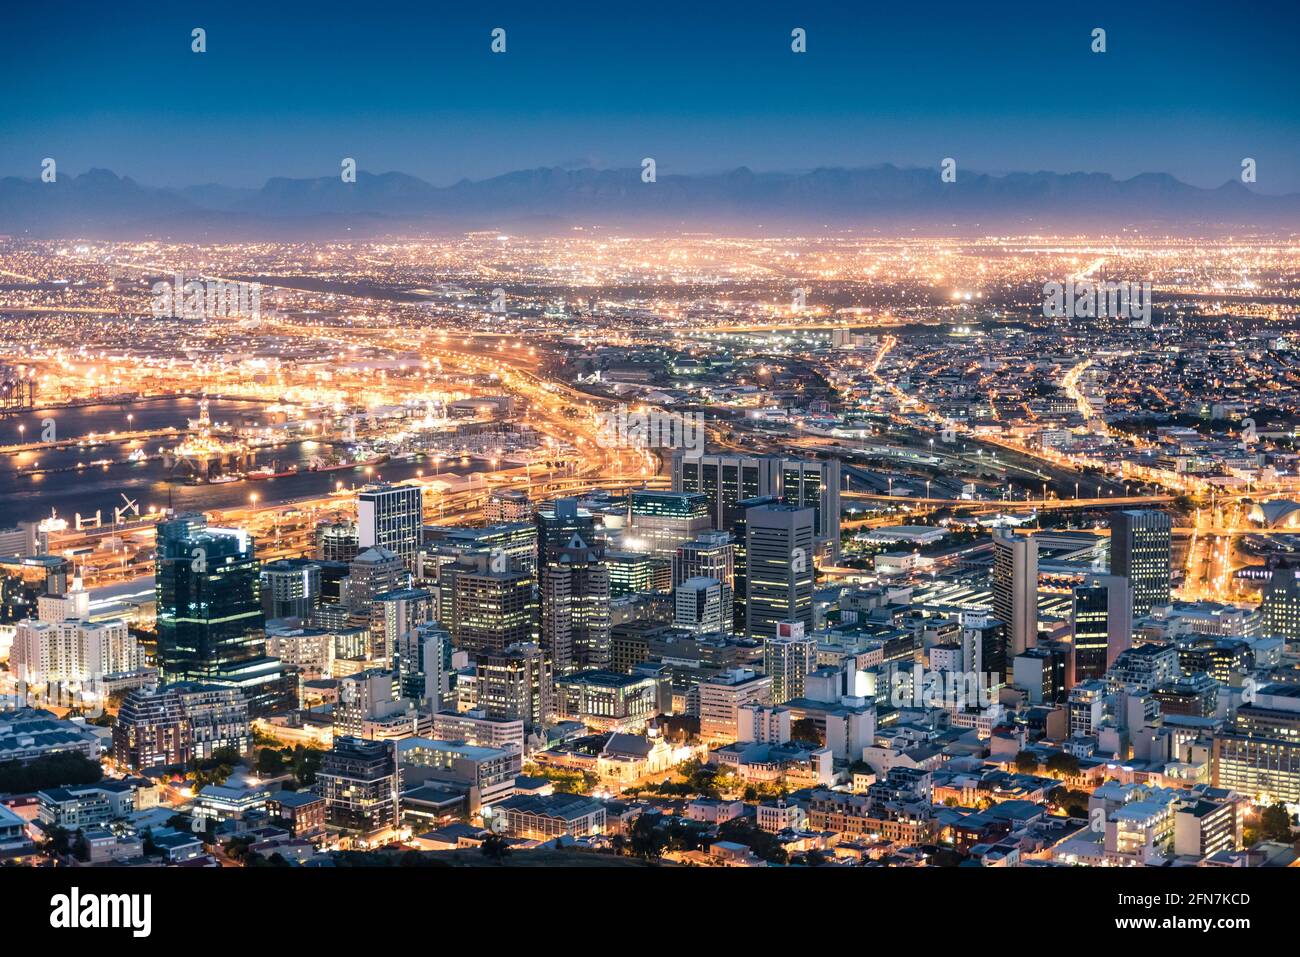 Vista aerea di Città del Capo da Signal Hill dopo il tramonto Durante l'ora blu - Sud Africa città moderna con spettacolare panorama notturno Foto Stock